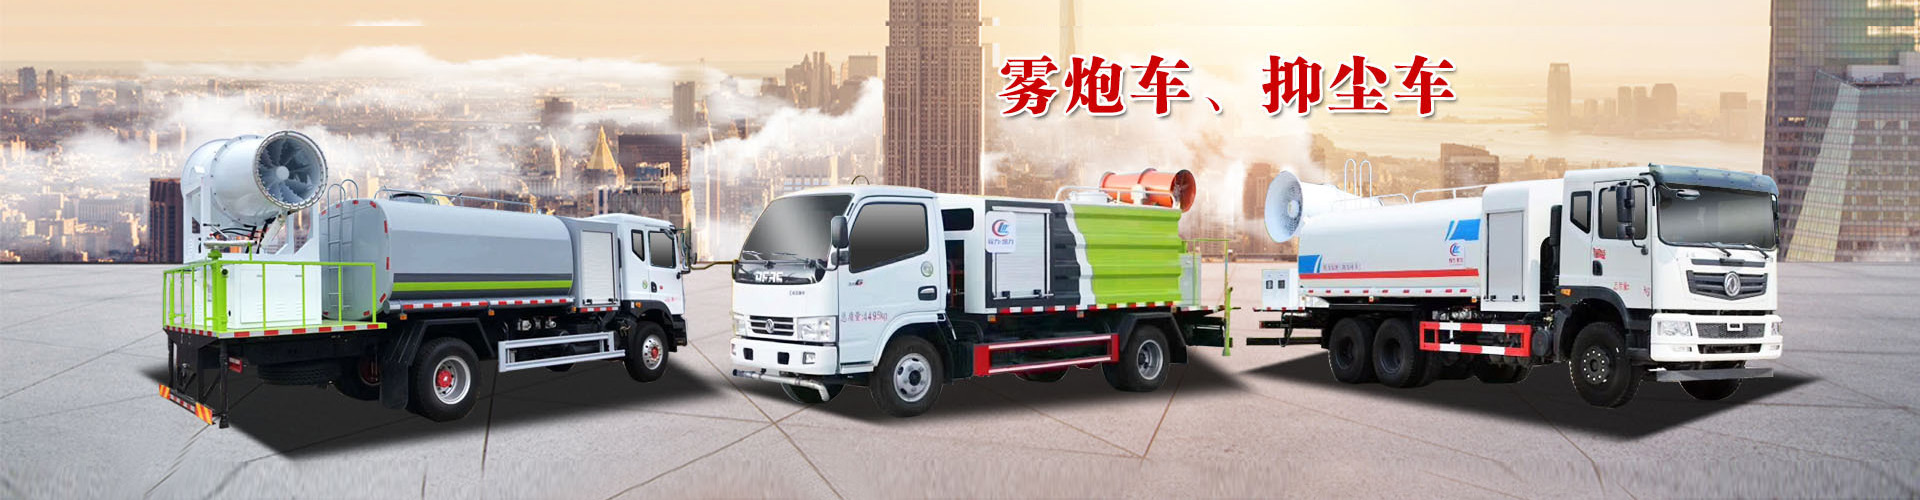 挂桶式垃圾车-程力专用汽车股份有限公司